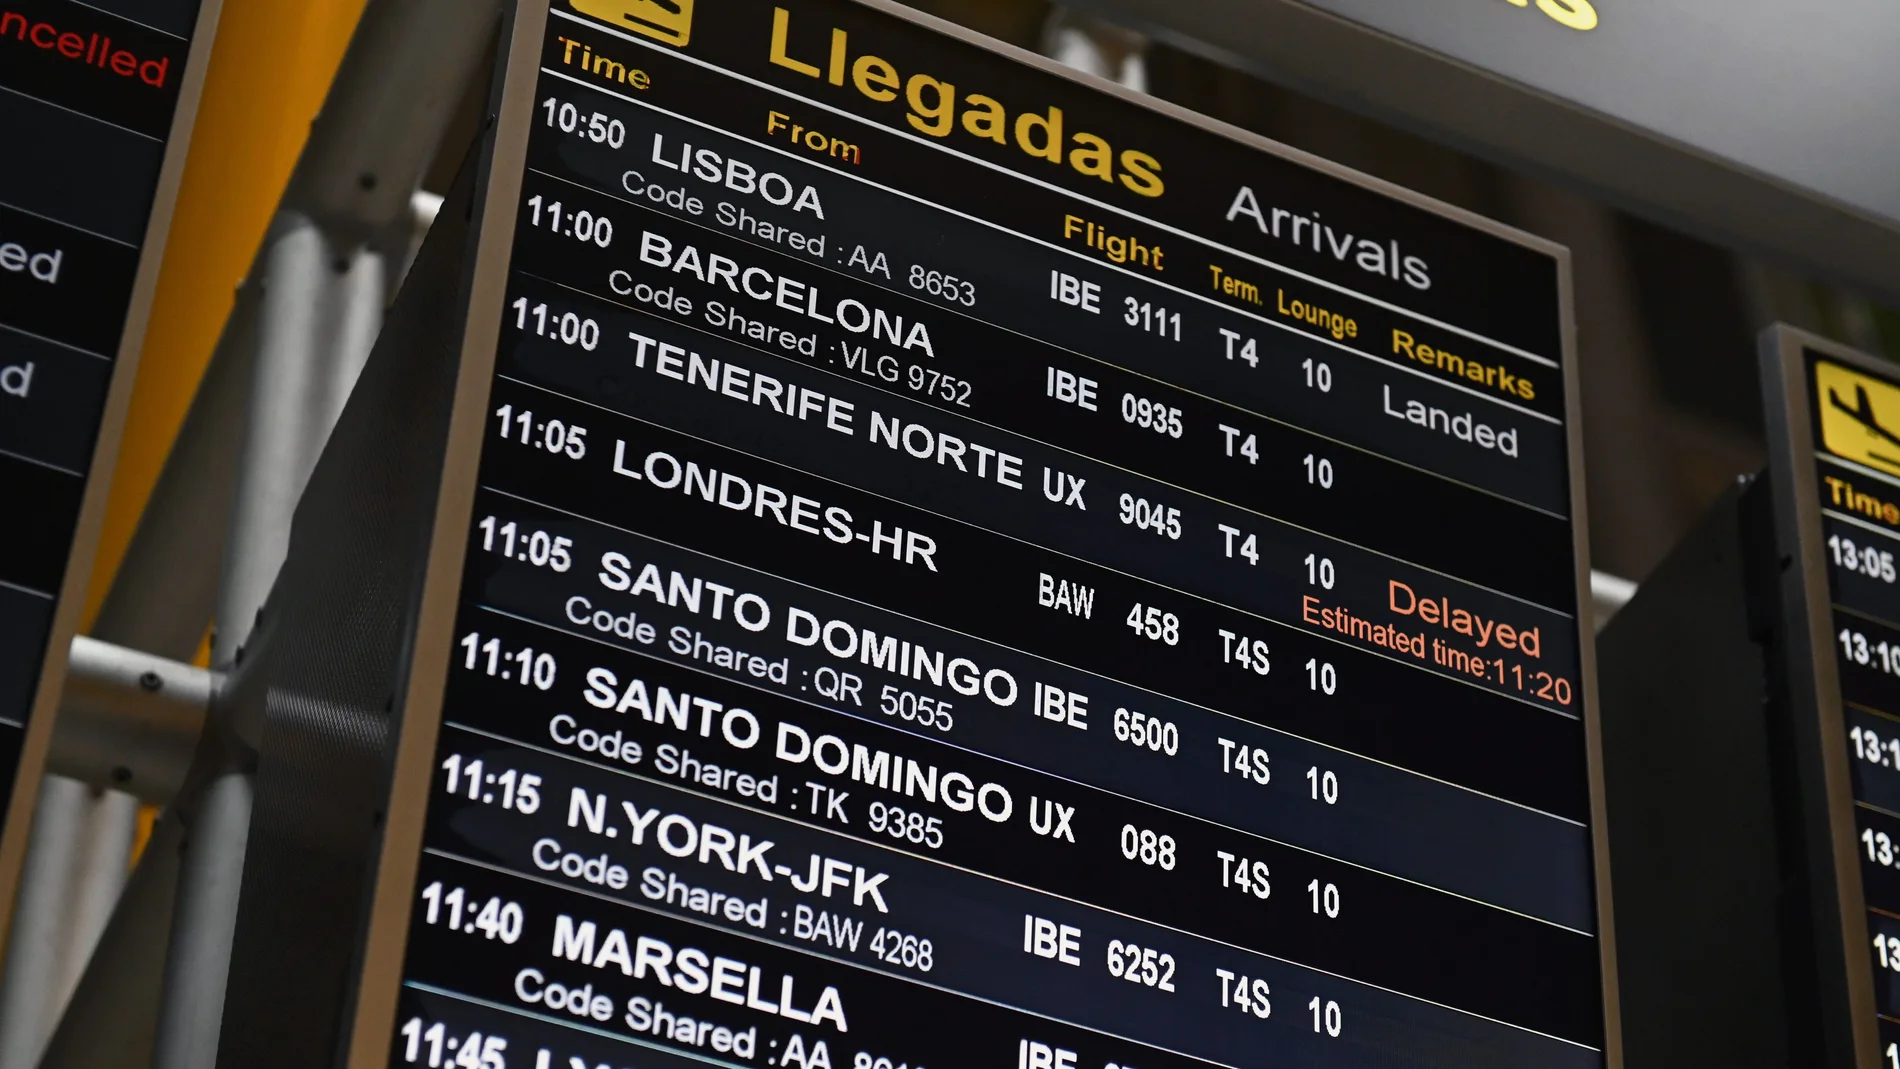 Vista del panel de llegadas con un vuelo procedente de Londres en aeropuerto Adolfo Suárez Madrid Barajas este lunes